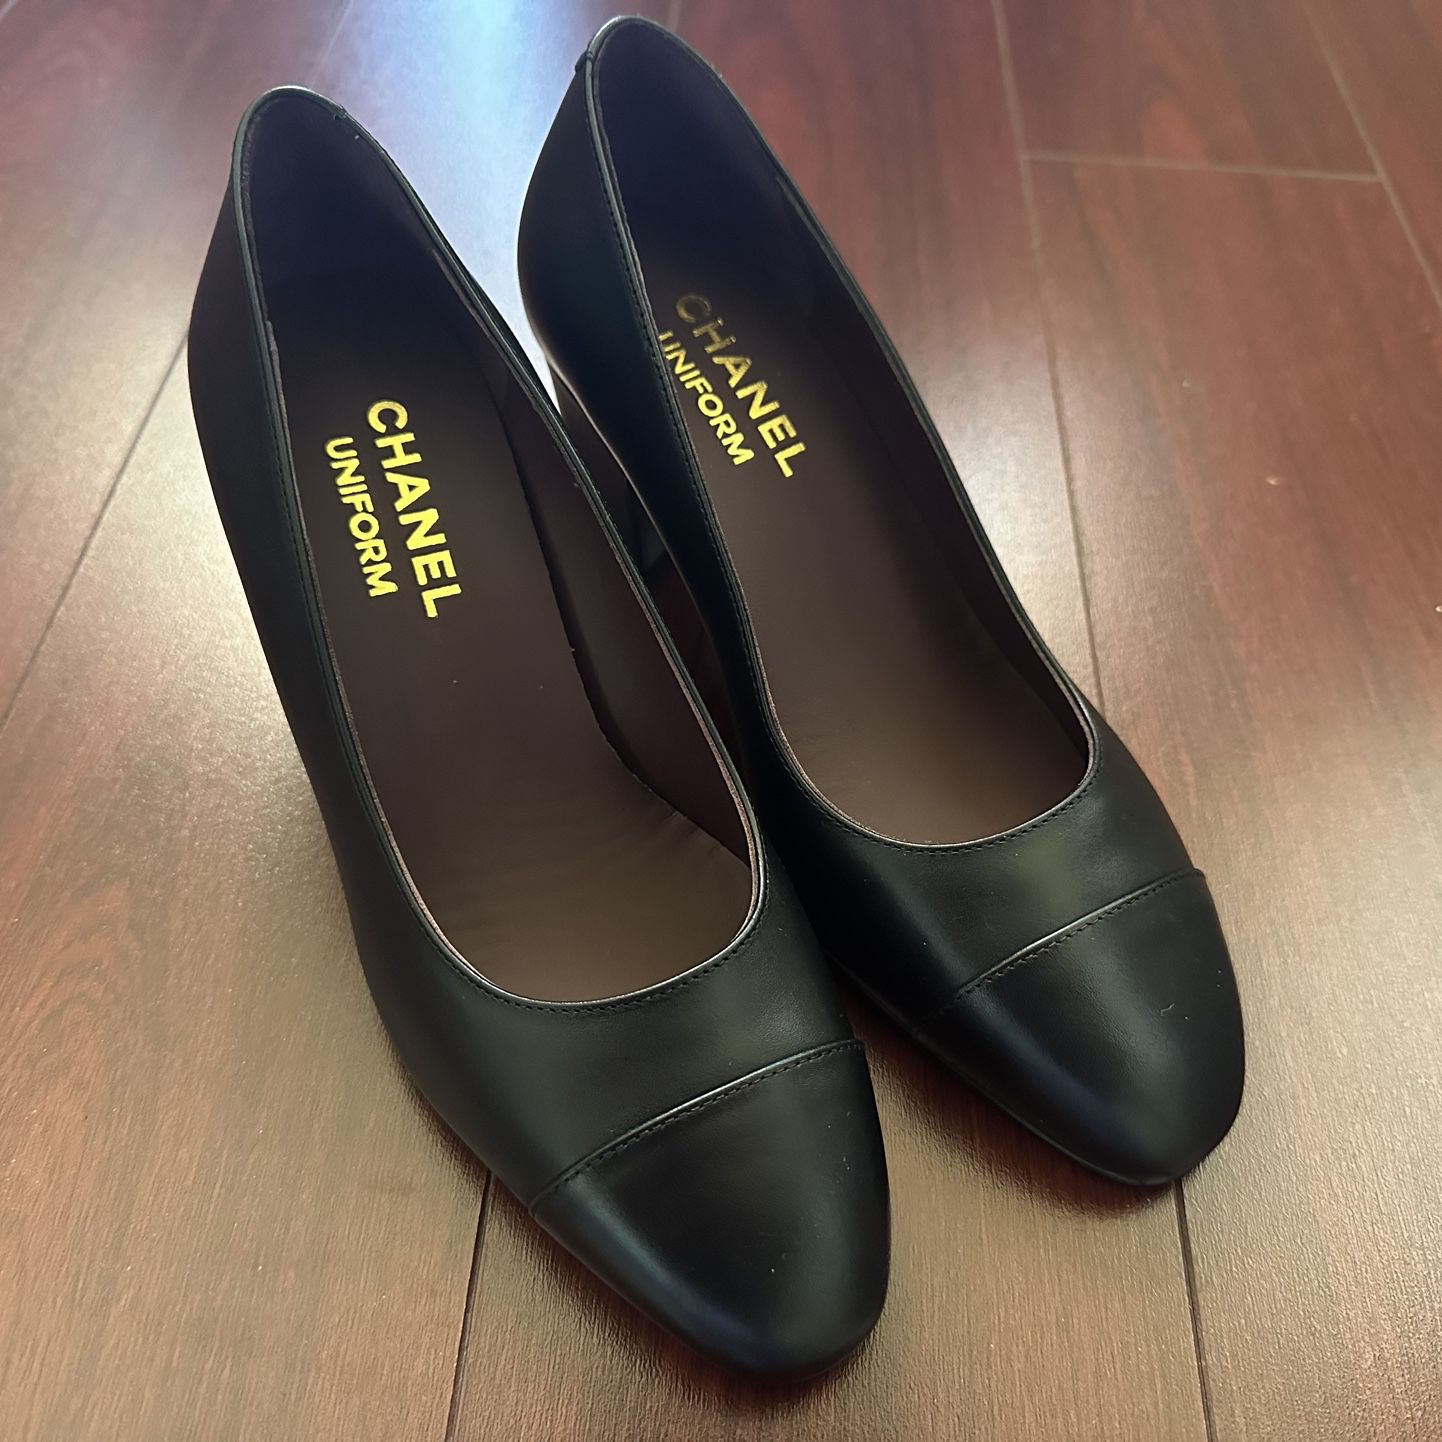 100% Authentic Chanel Uniform Black Leather Cap Toe Mid Heel Shoes Sz 35 CC